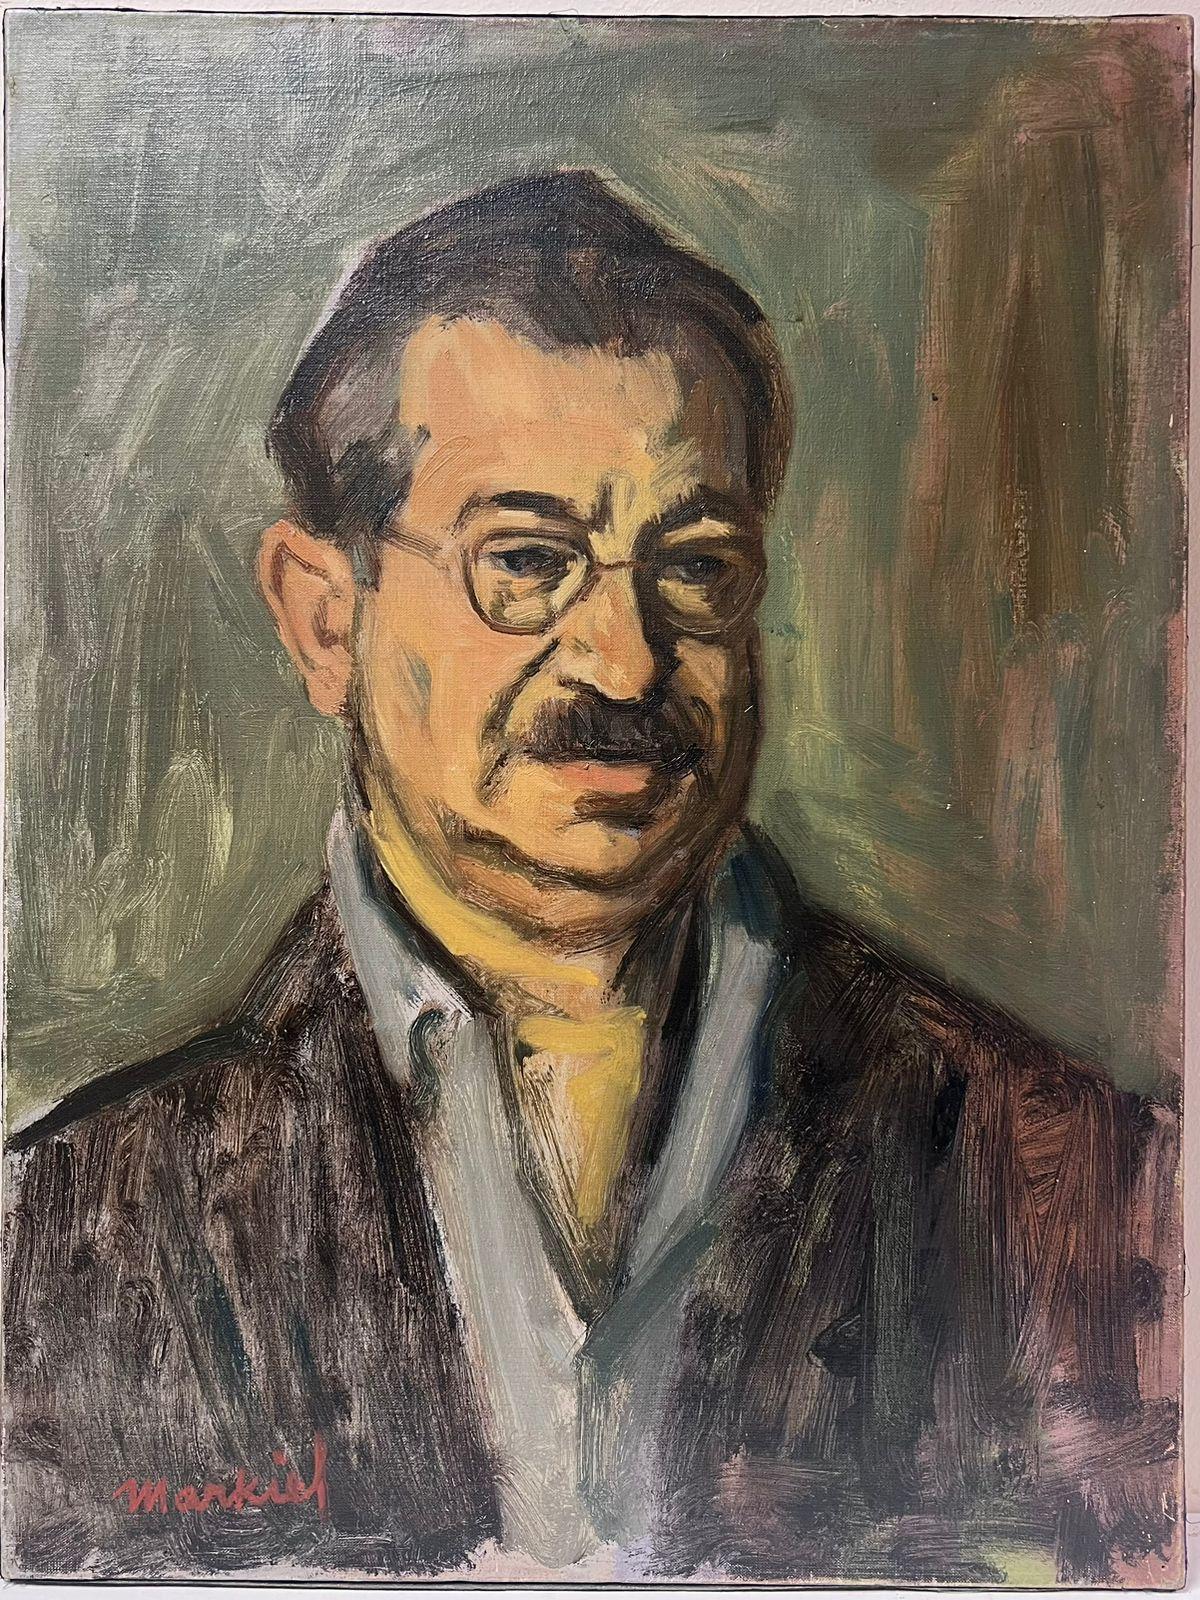 Figurative Painting Jacob Markiel - 20e siècle Portrait d'un homme avec des lunettes par un artiste polonais renommé Huile sur toile